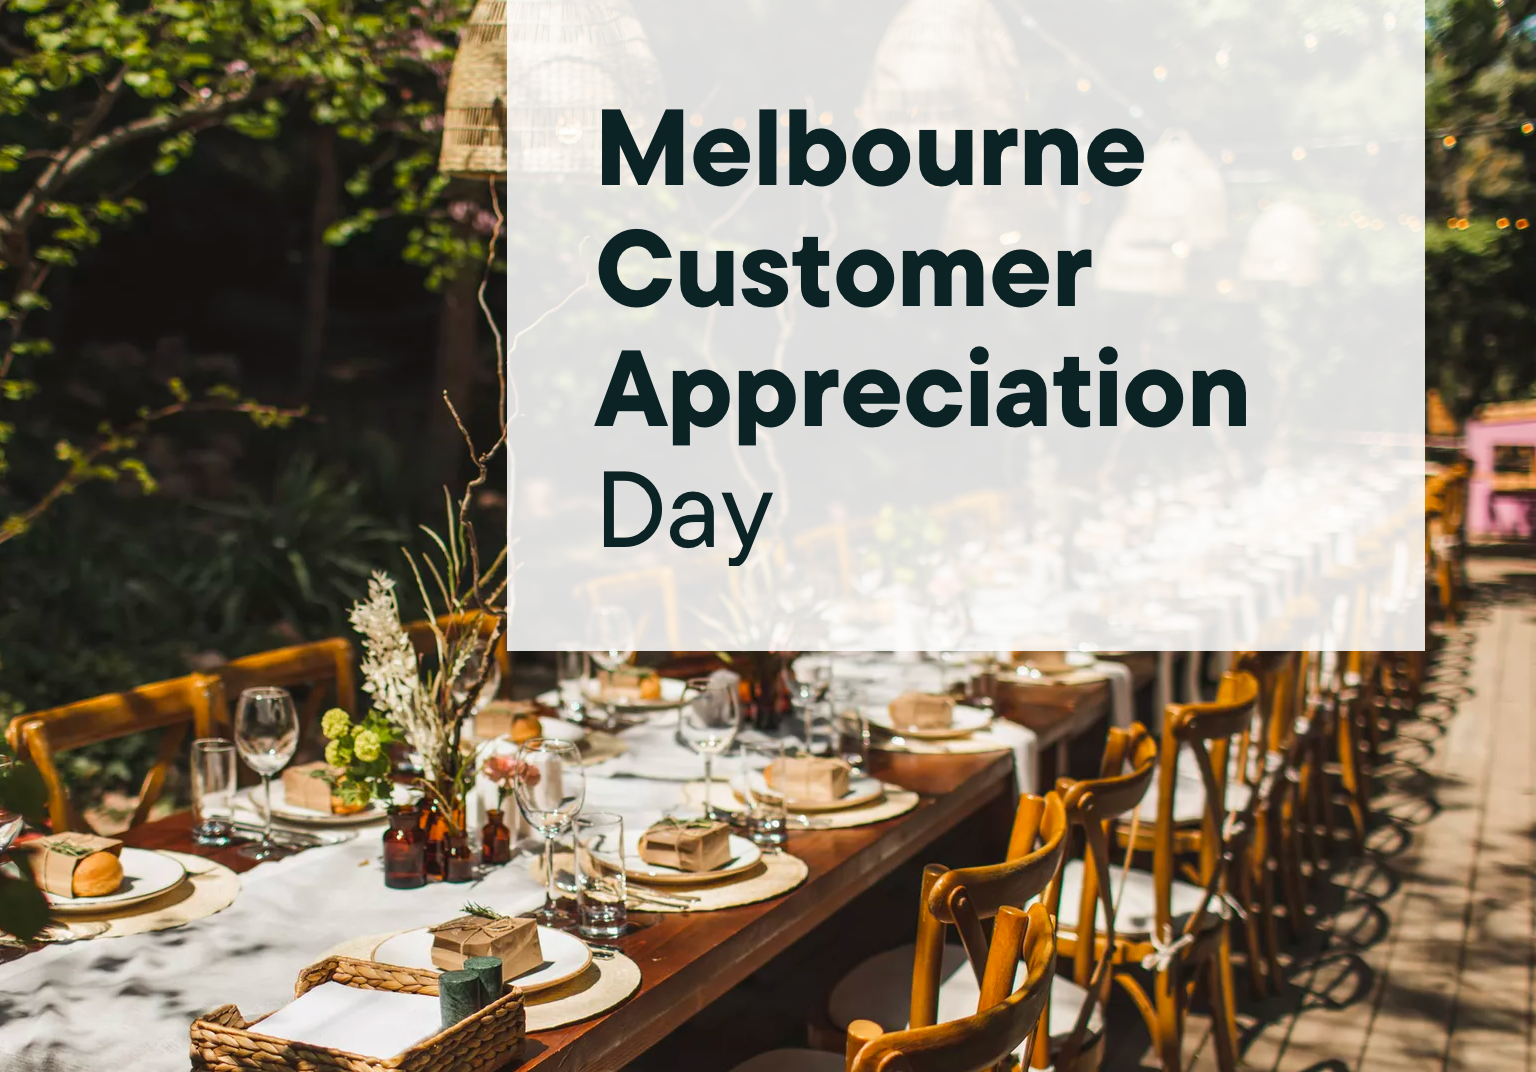 Melbourne Customer Appreciation Day